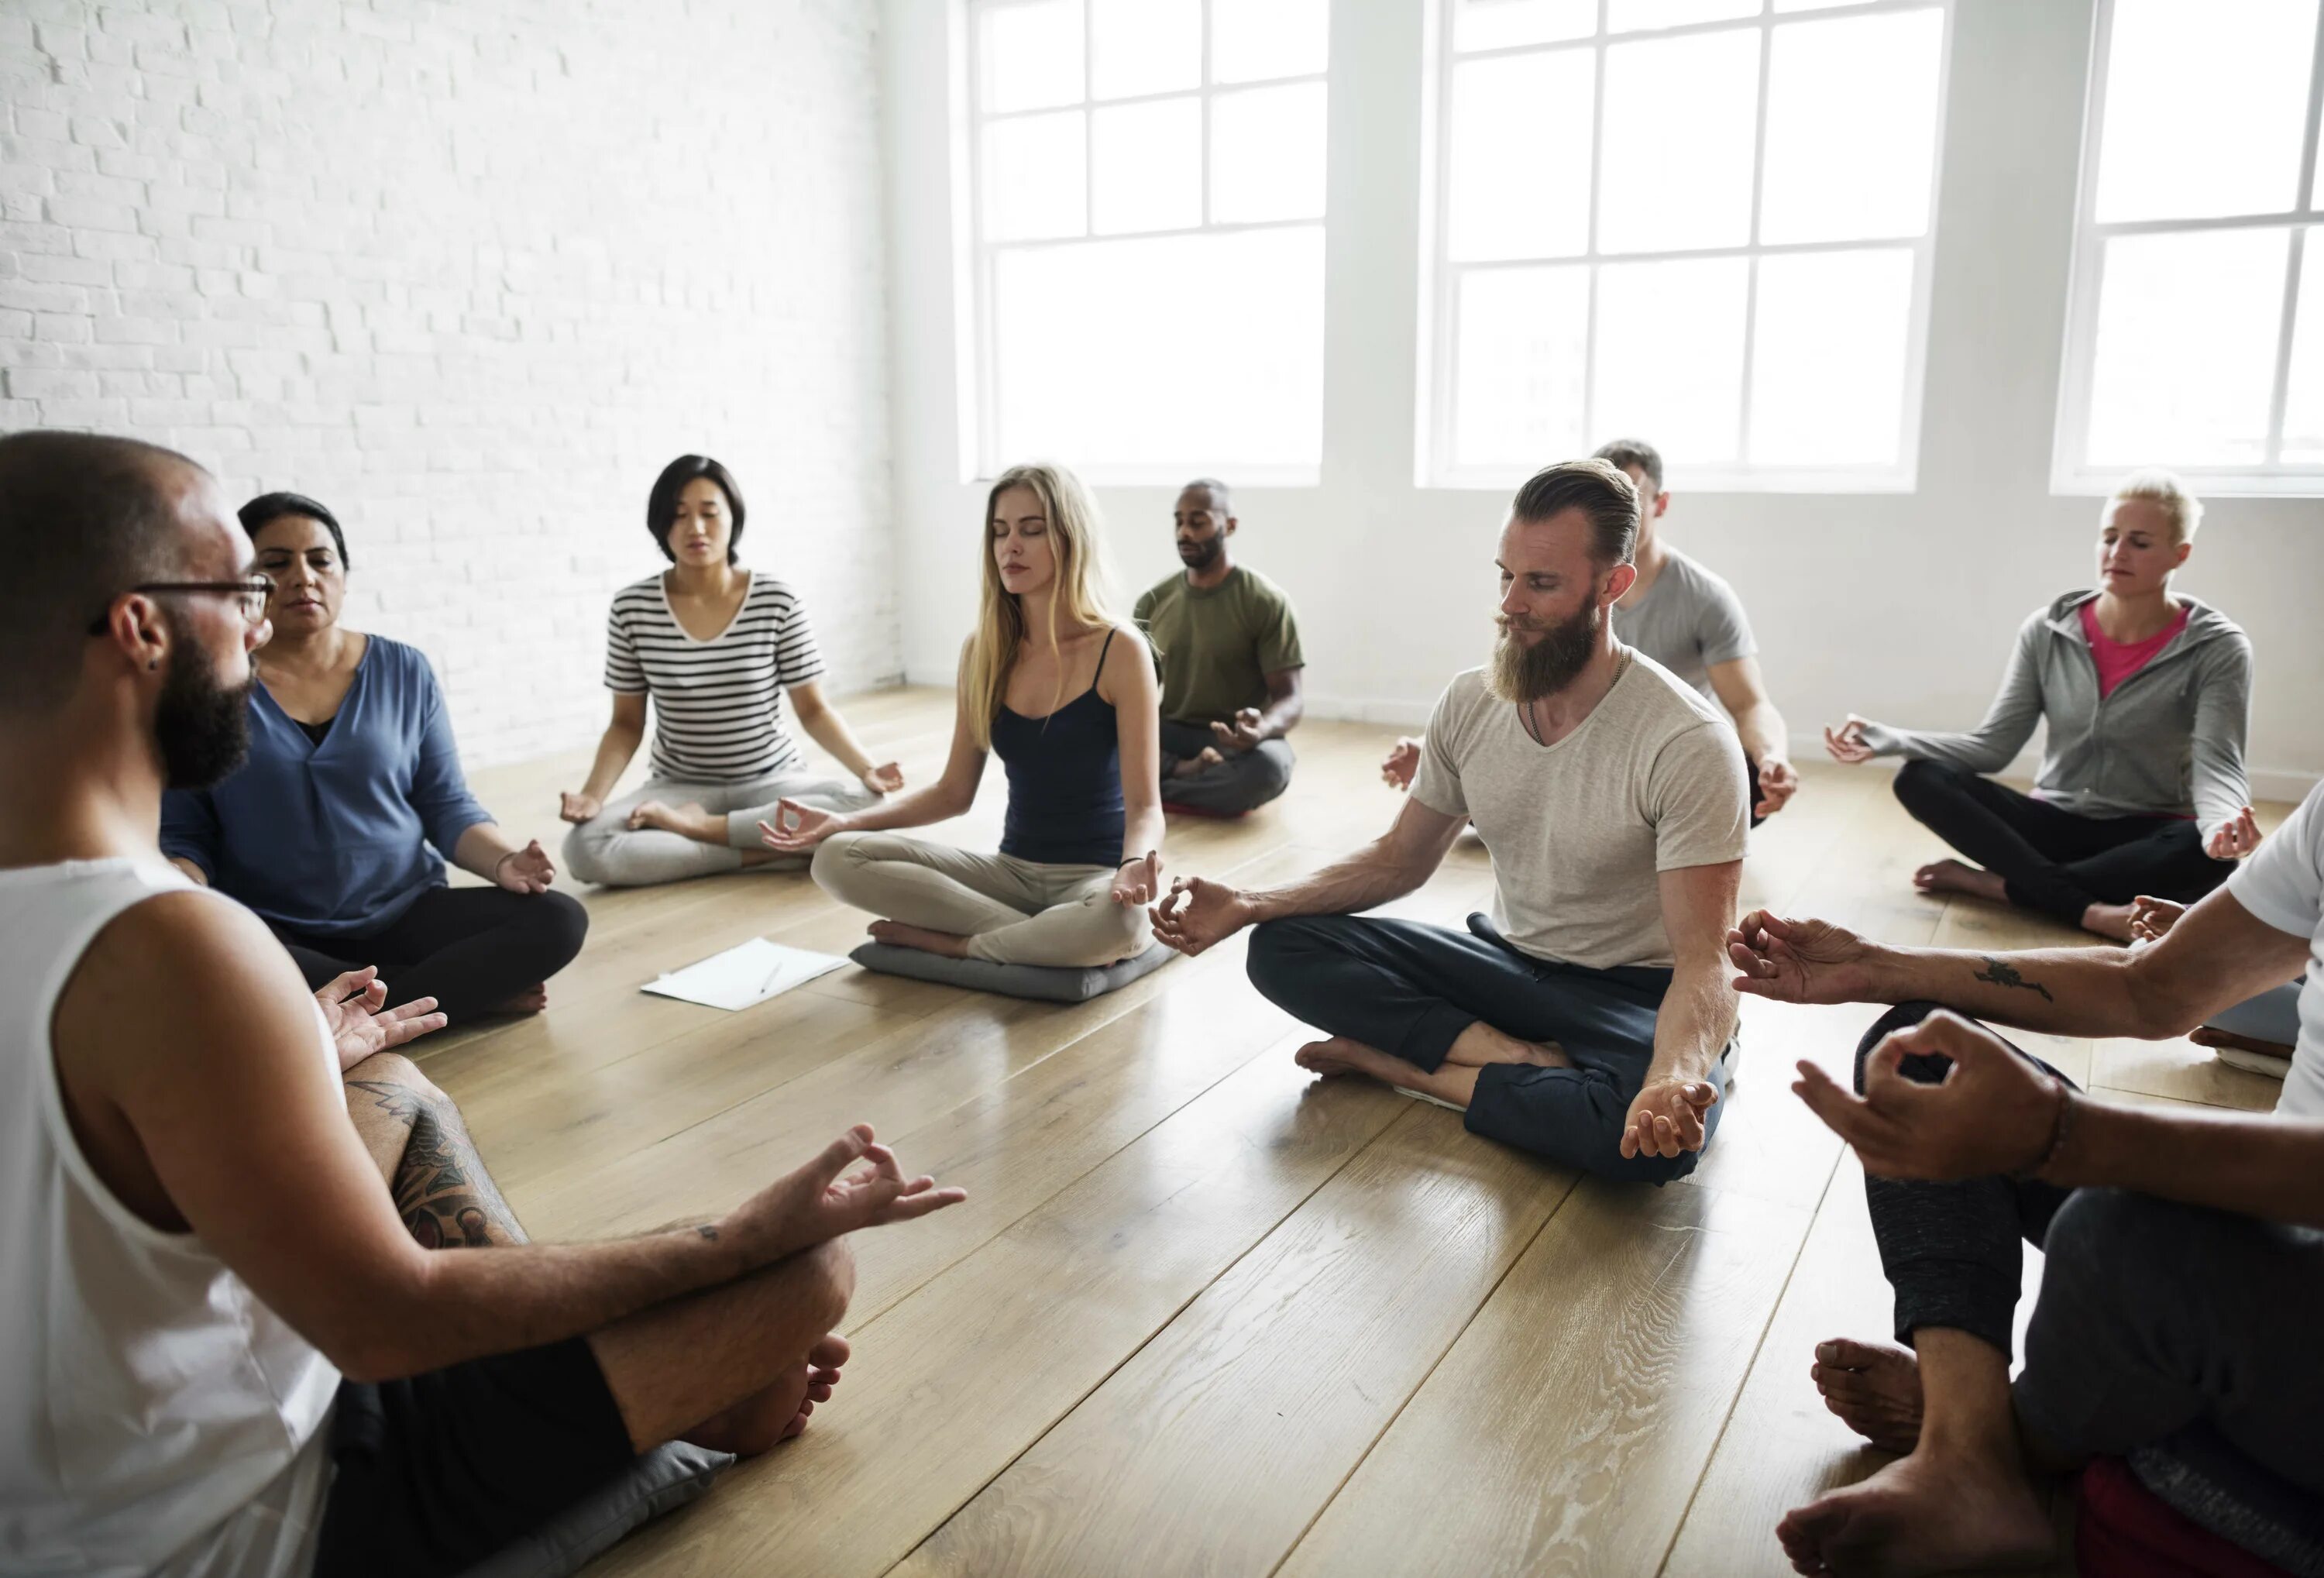 Групповая медитация. Медитация группа людей. Группа людей медитируют. Коллективная медитация. Медитация форум